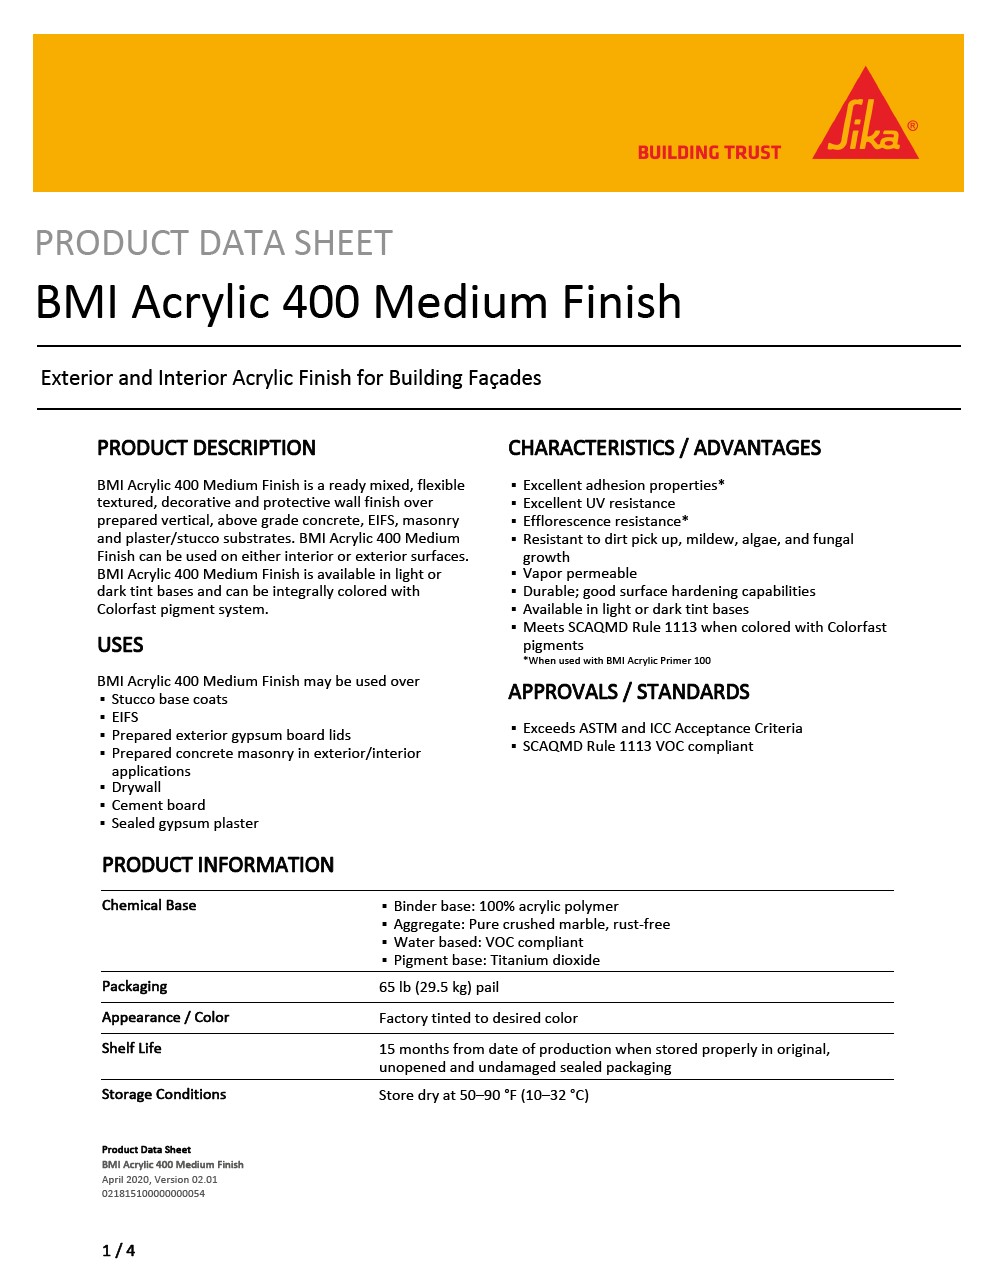 BMI Acrylic 400 Medium Finish